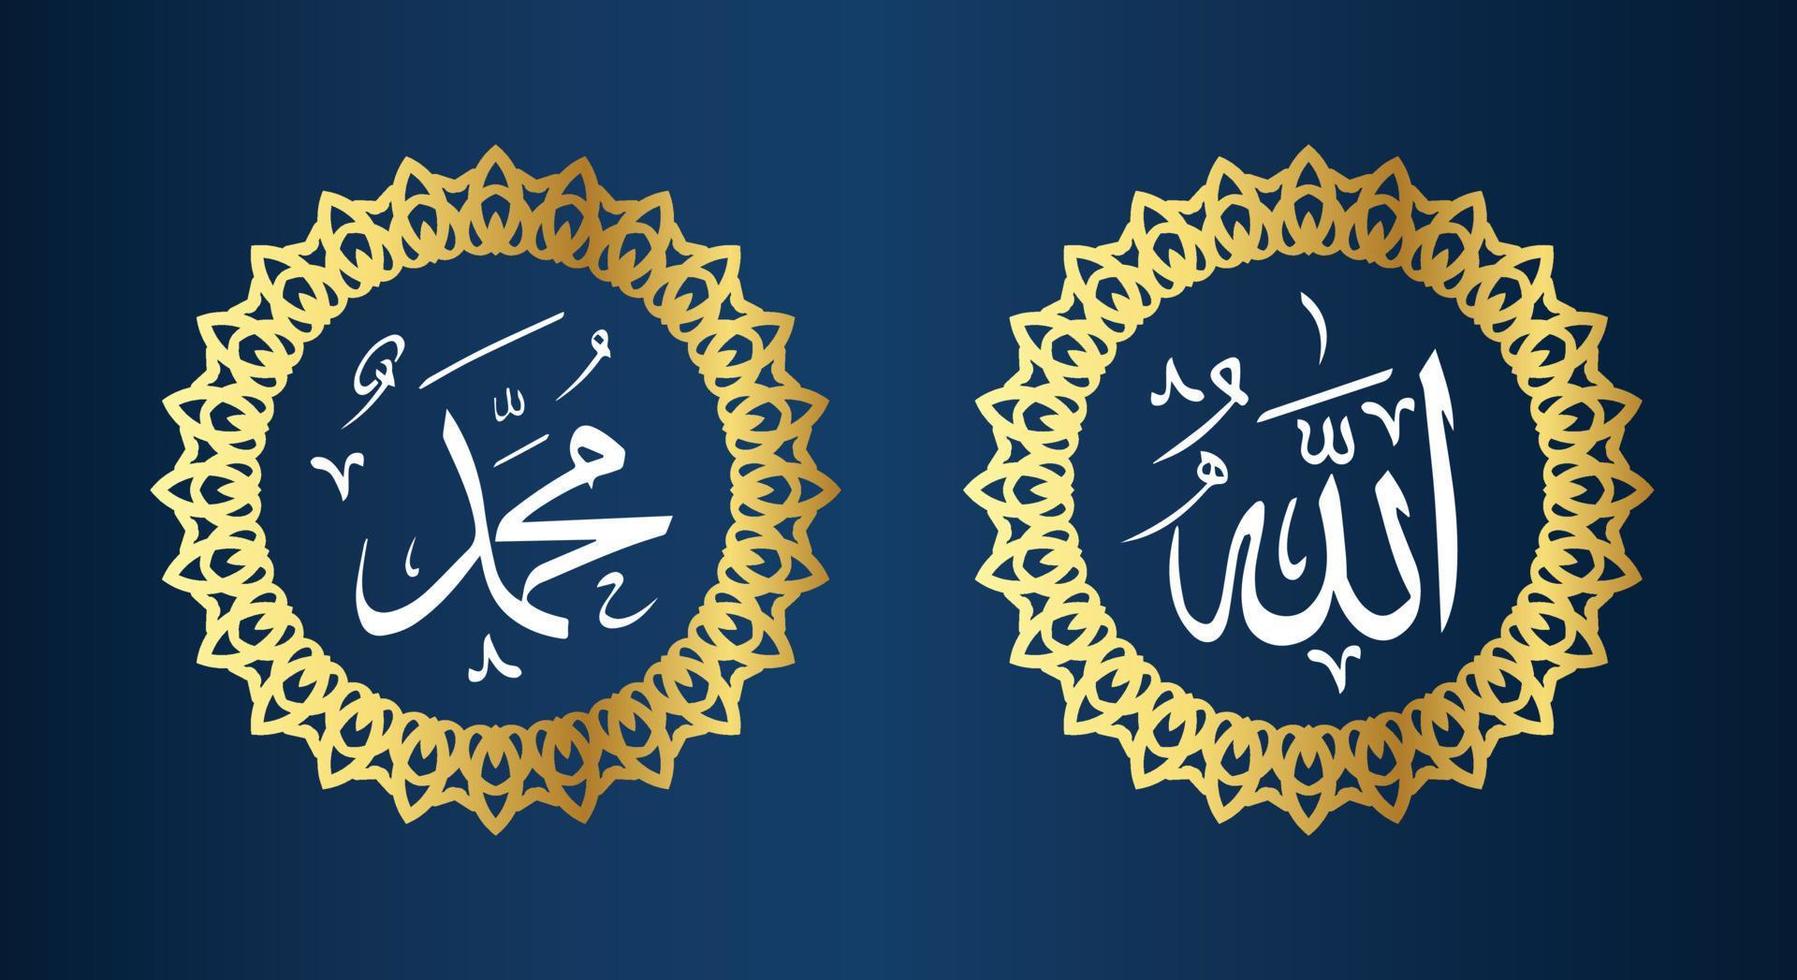 caligrafía árabe de allah muhammad con marco circular y color dorado con fondo azul vector